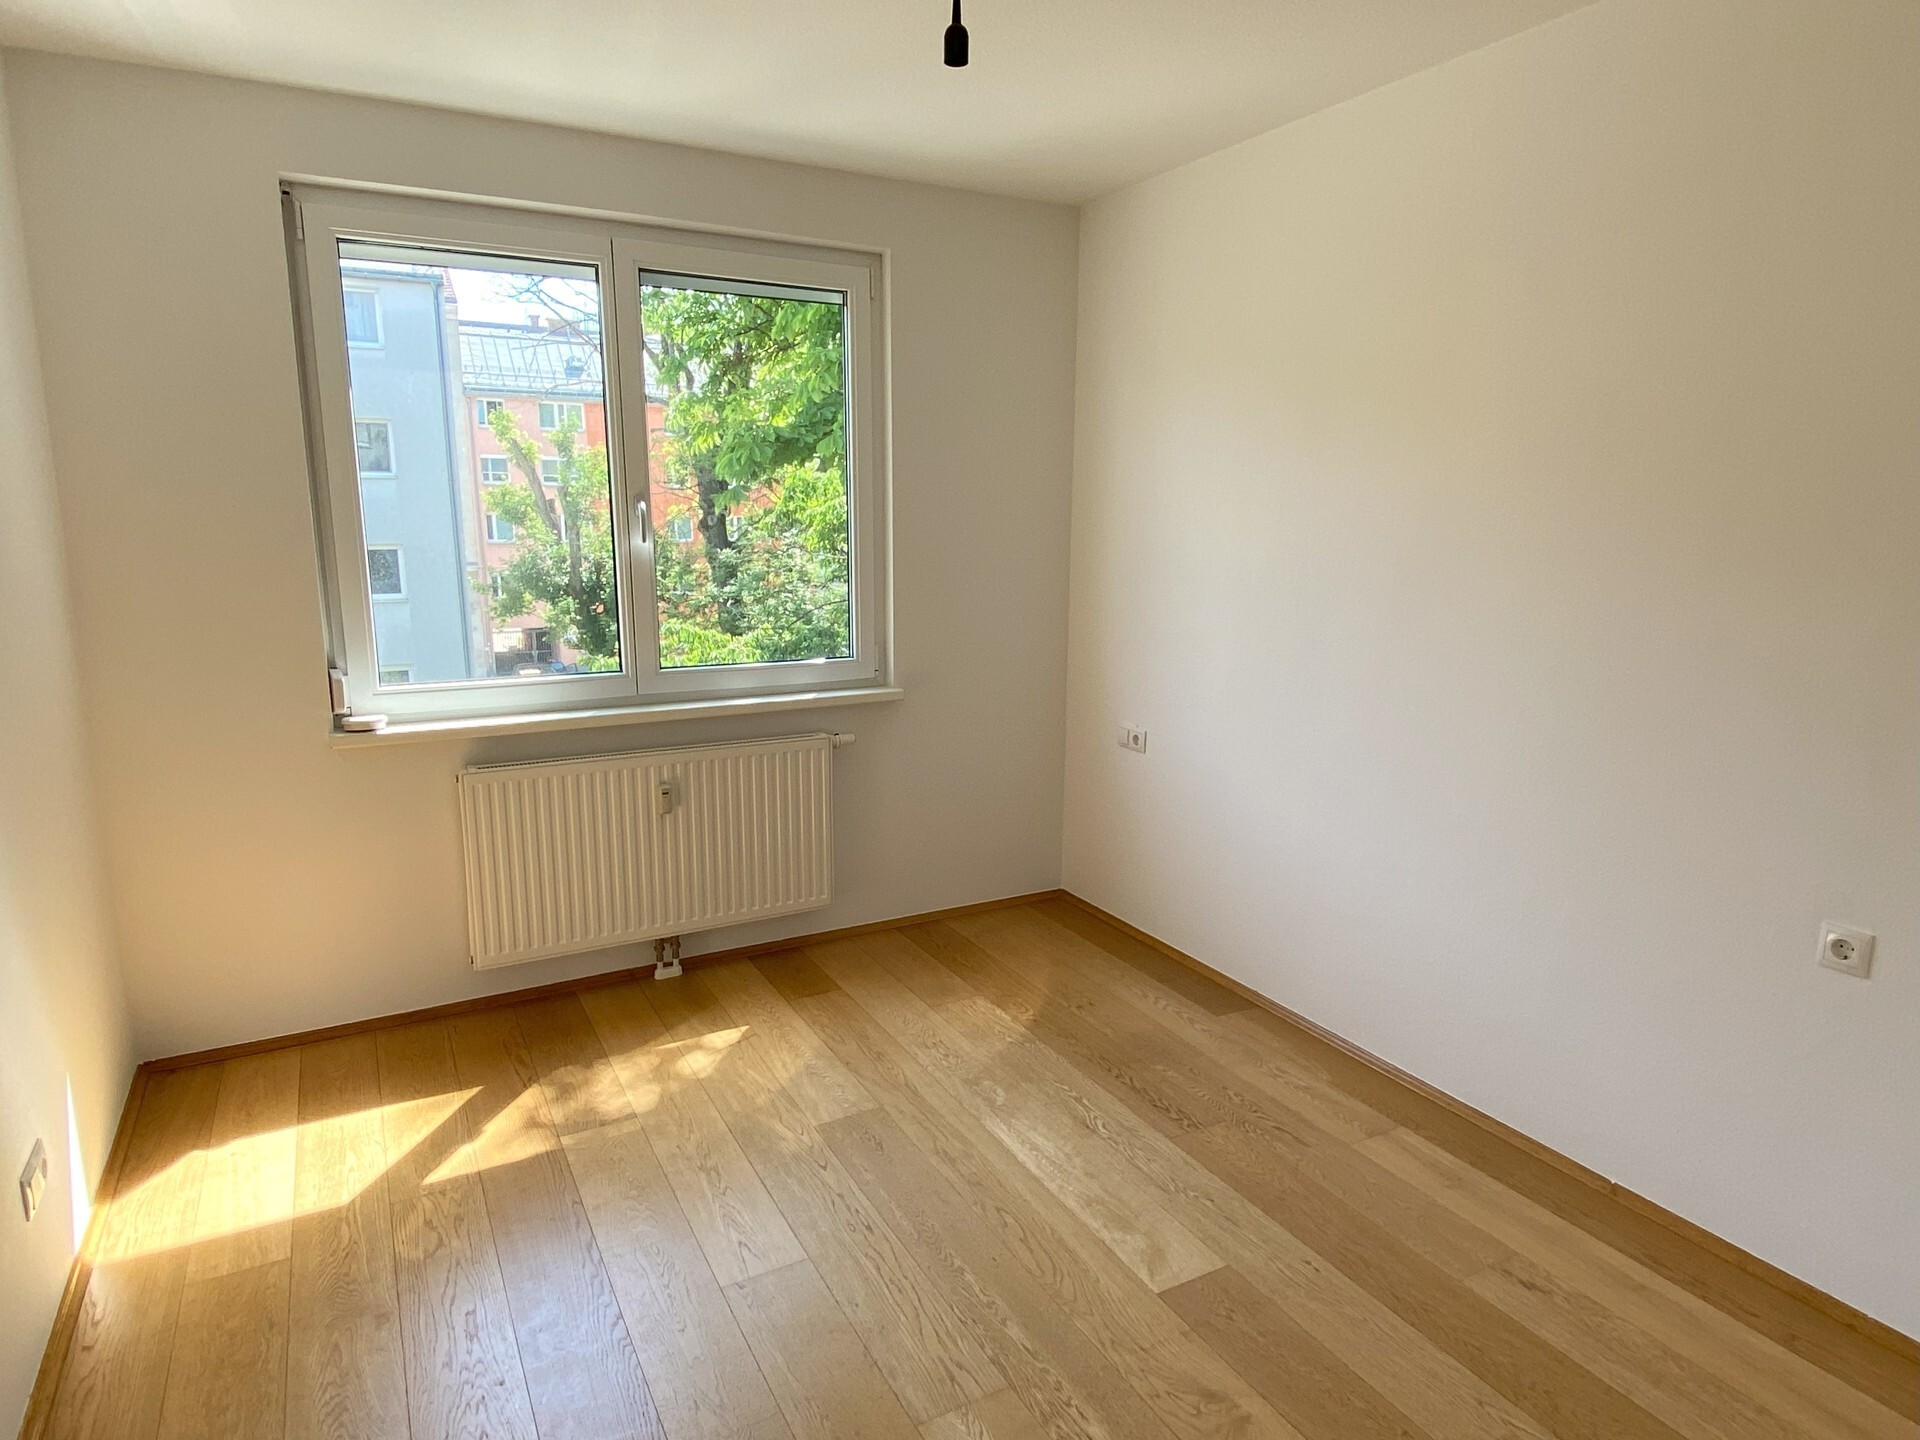 Helle 3-Zimmer-Wohnung mit Loggia, Einbauküche und Garagenstellplatz - zu kaufen in 1160 Wien